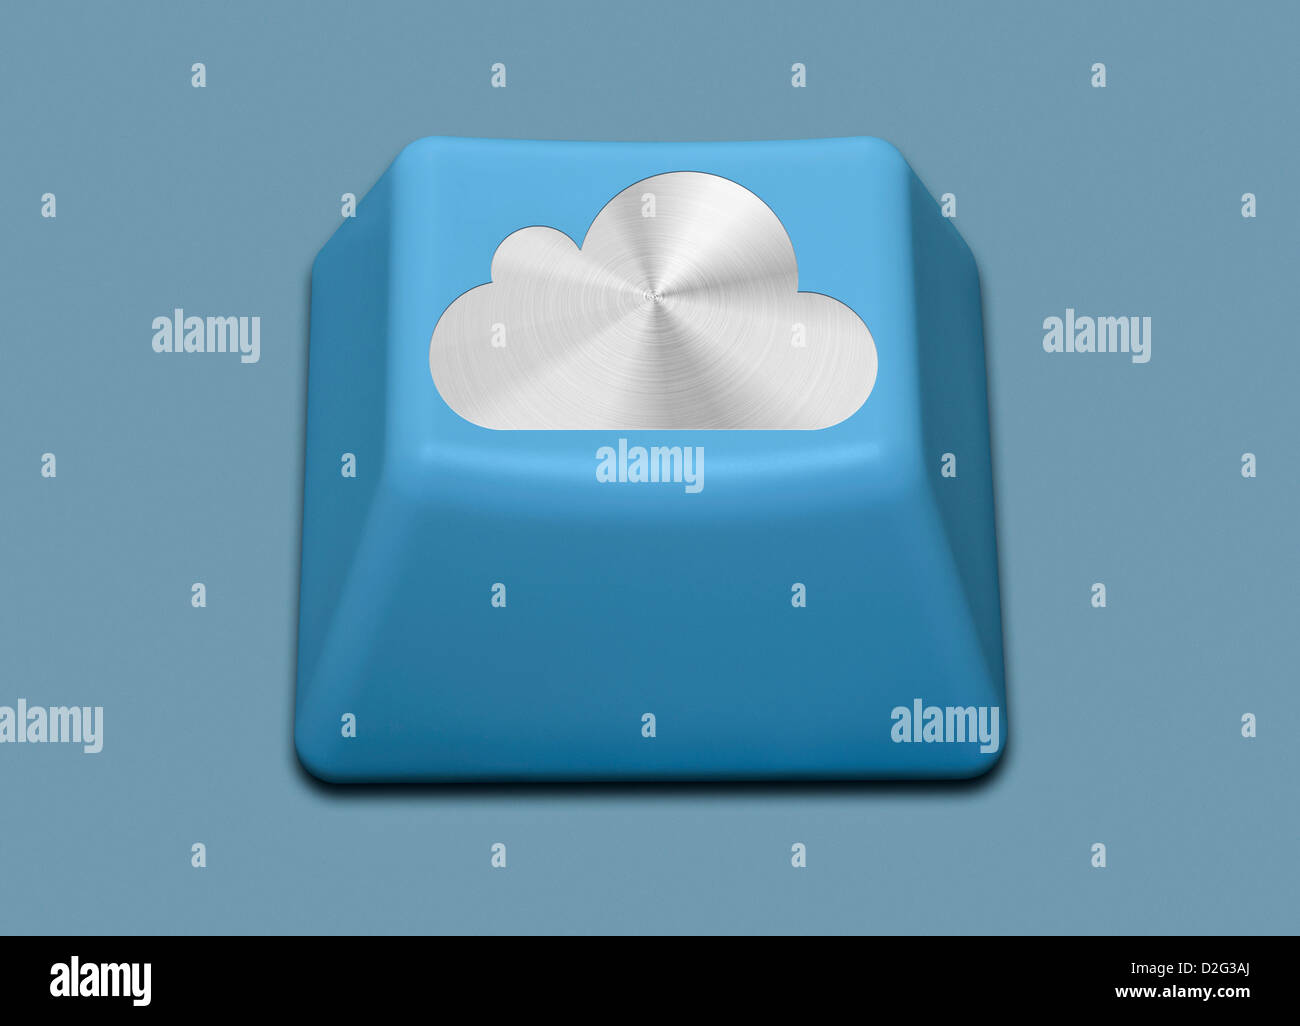 Calcolatore isolato il tasto con il logo di iCloud su di esso - cloud computing concept Foto Stock